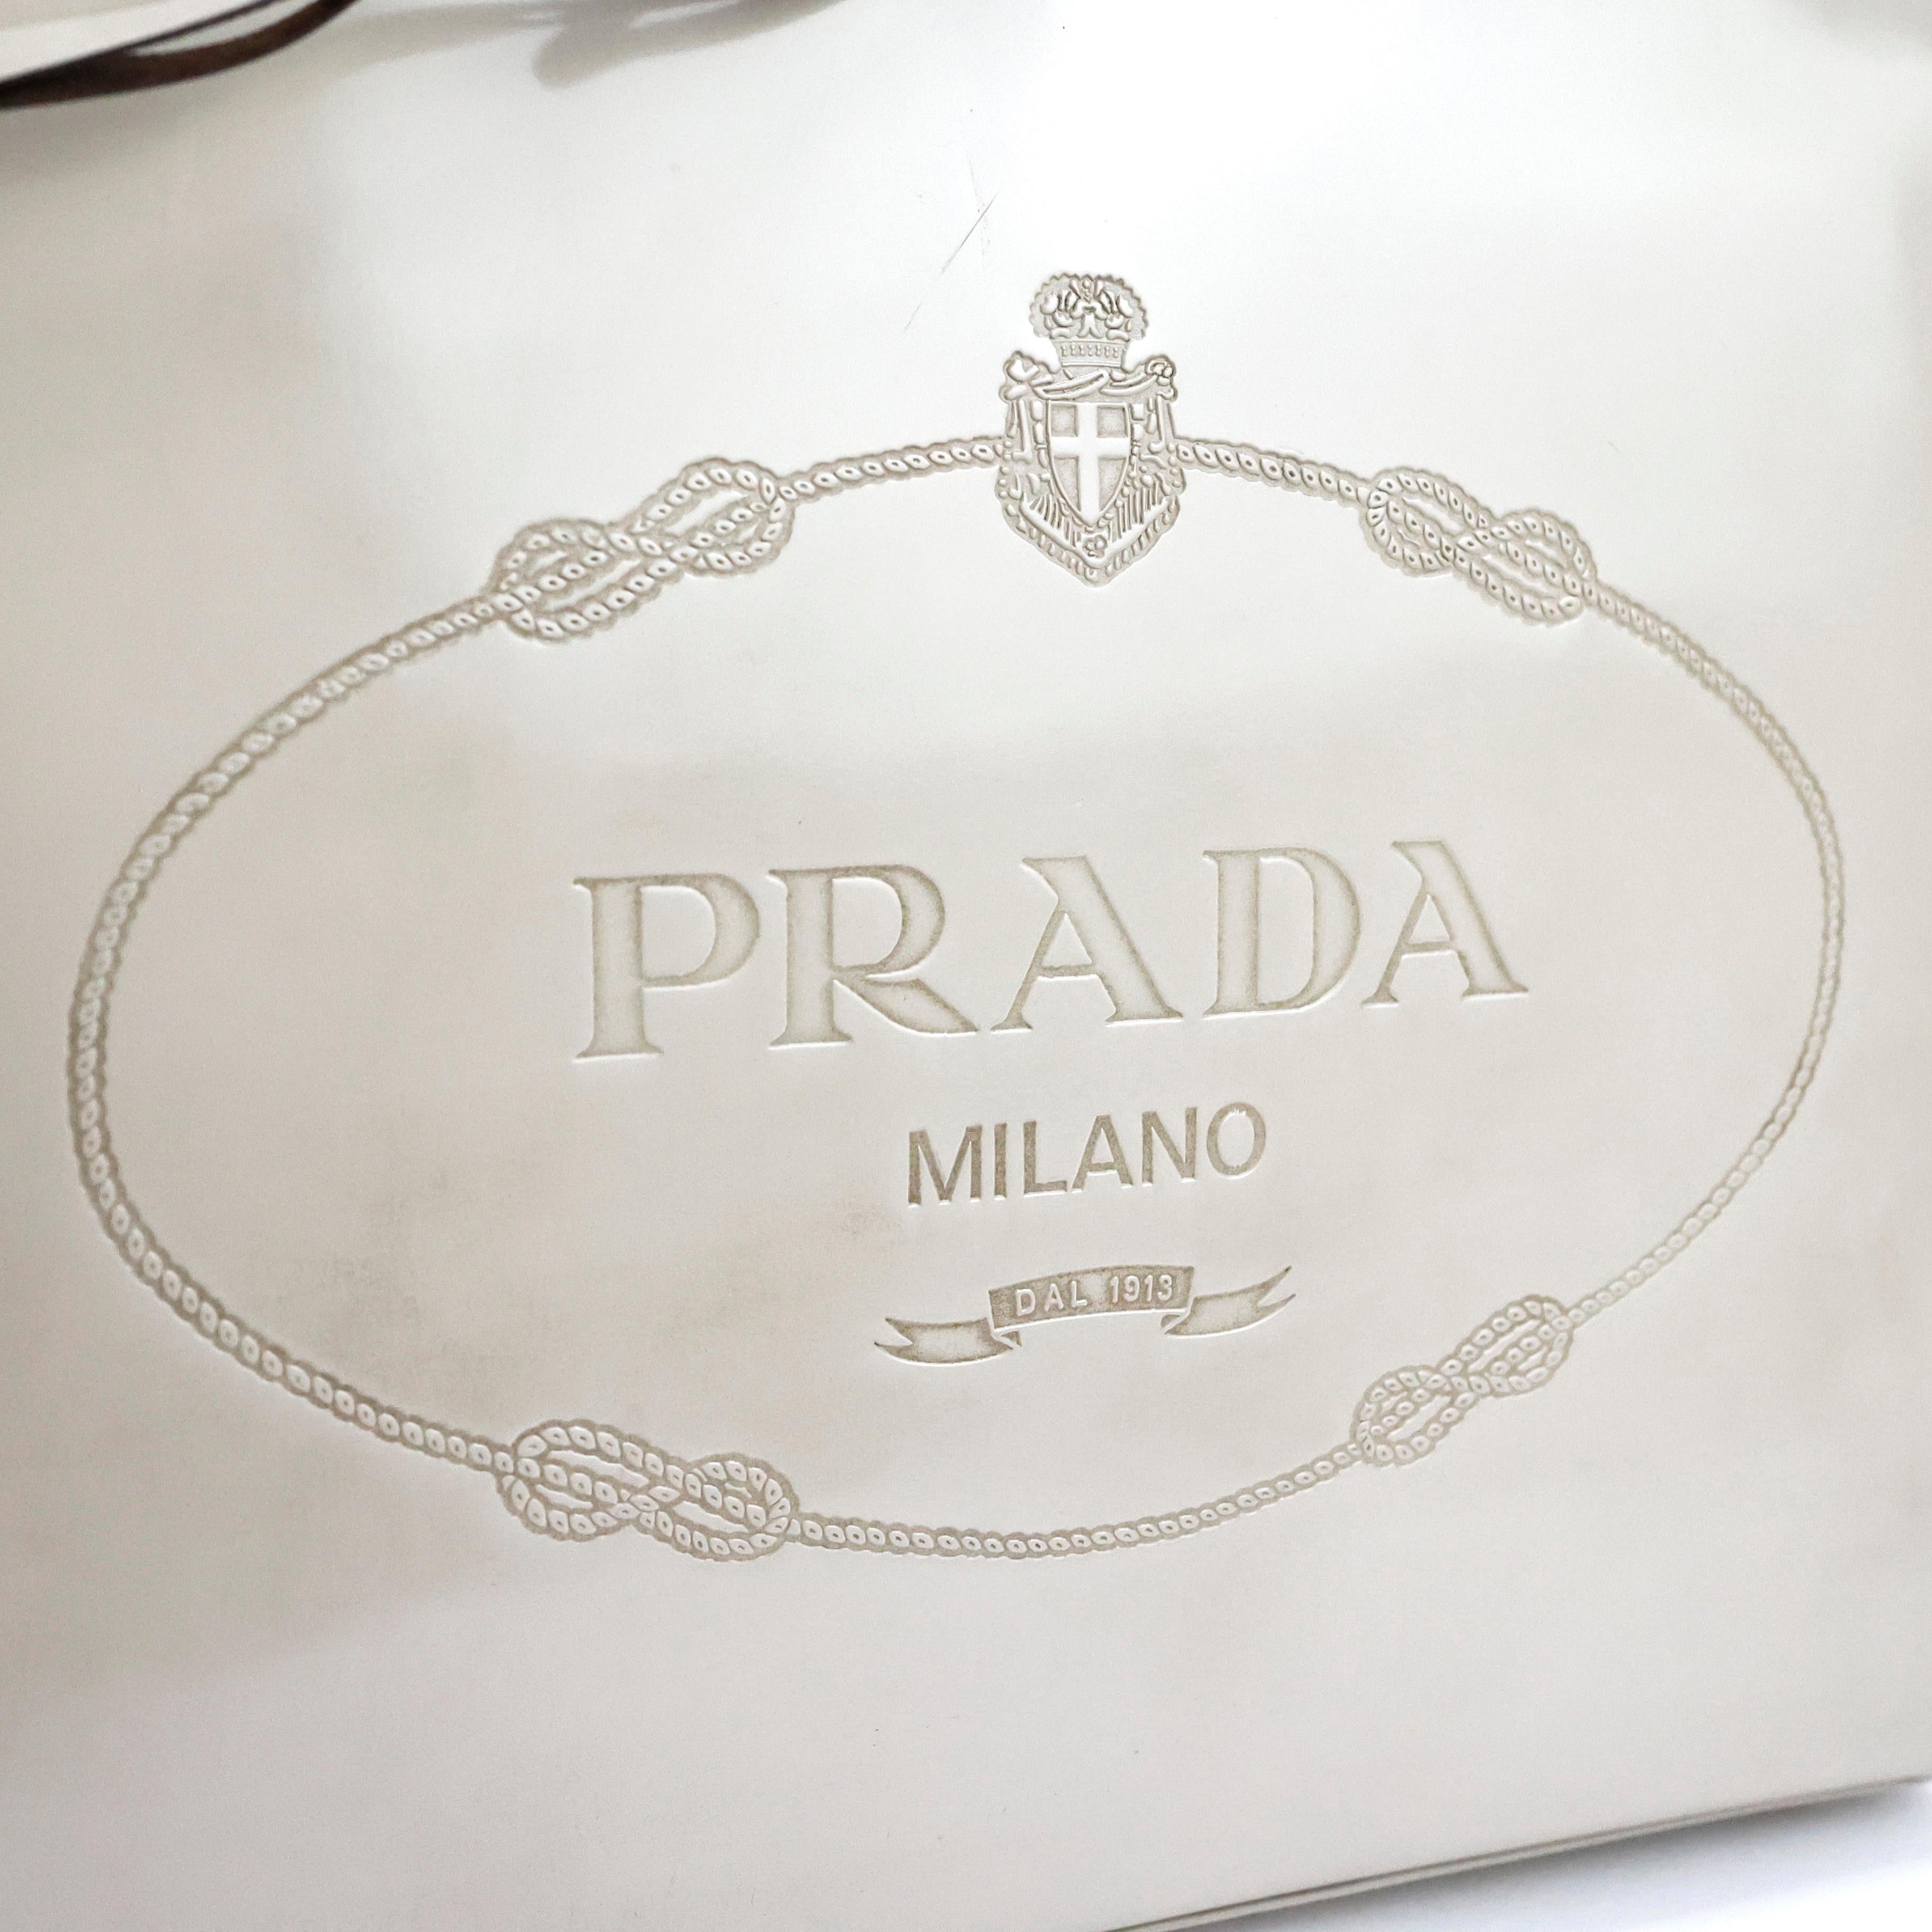 Prada The Devil Wears Prada Miranda Priestly Handbag  For Sale 4